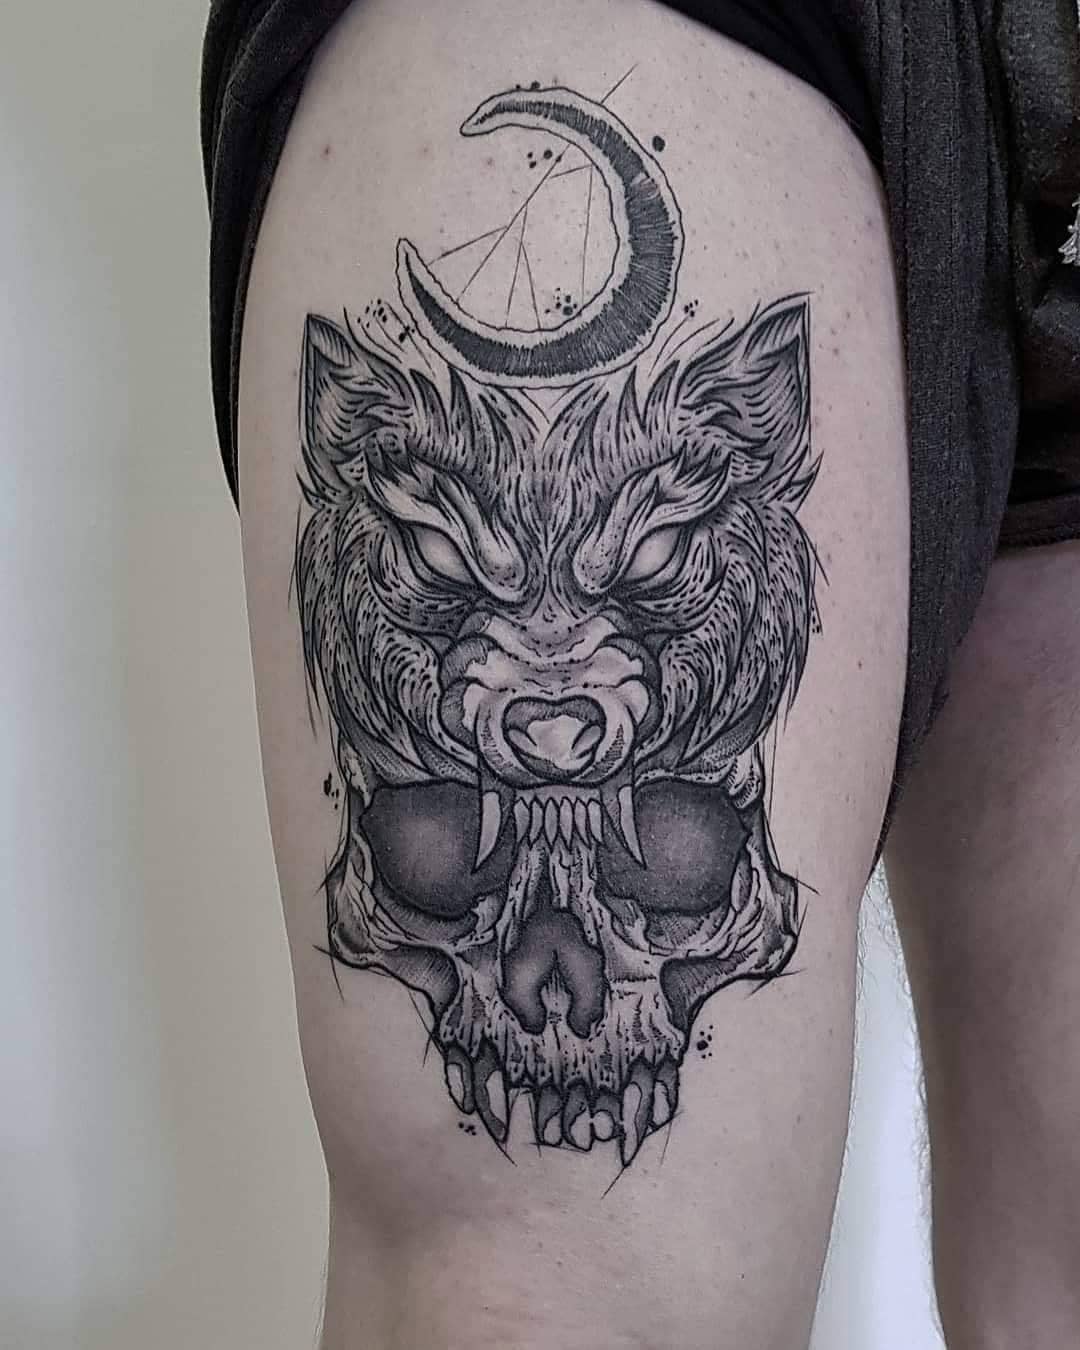 Tatuaż pół wilka pół czaszki